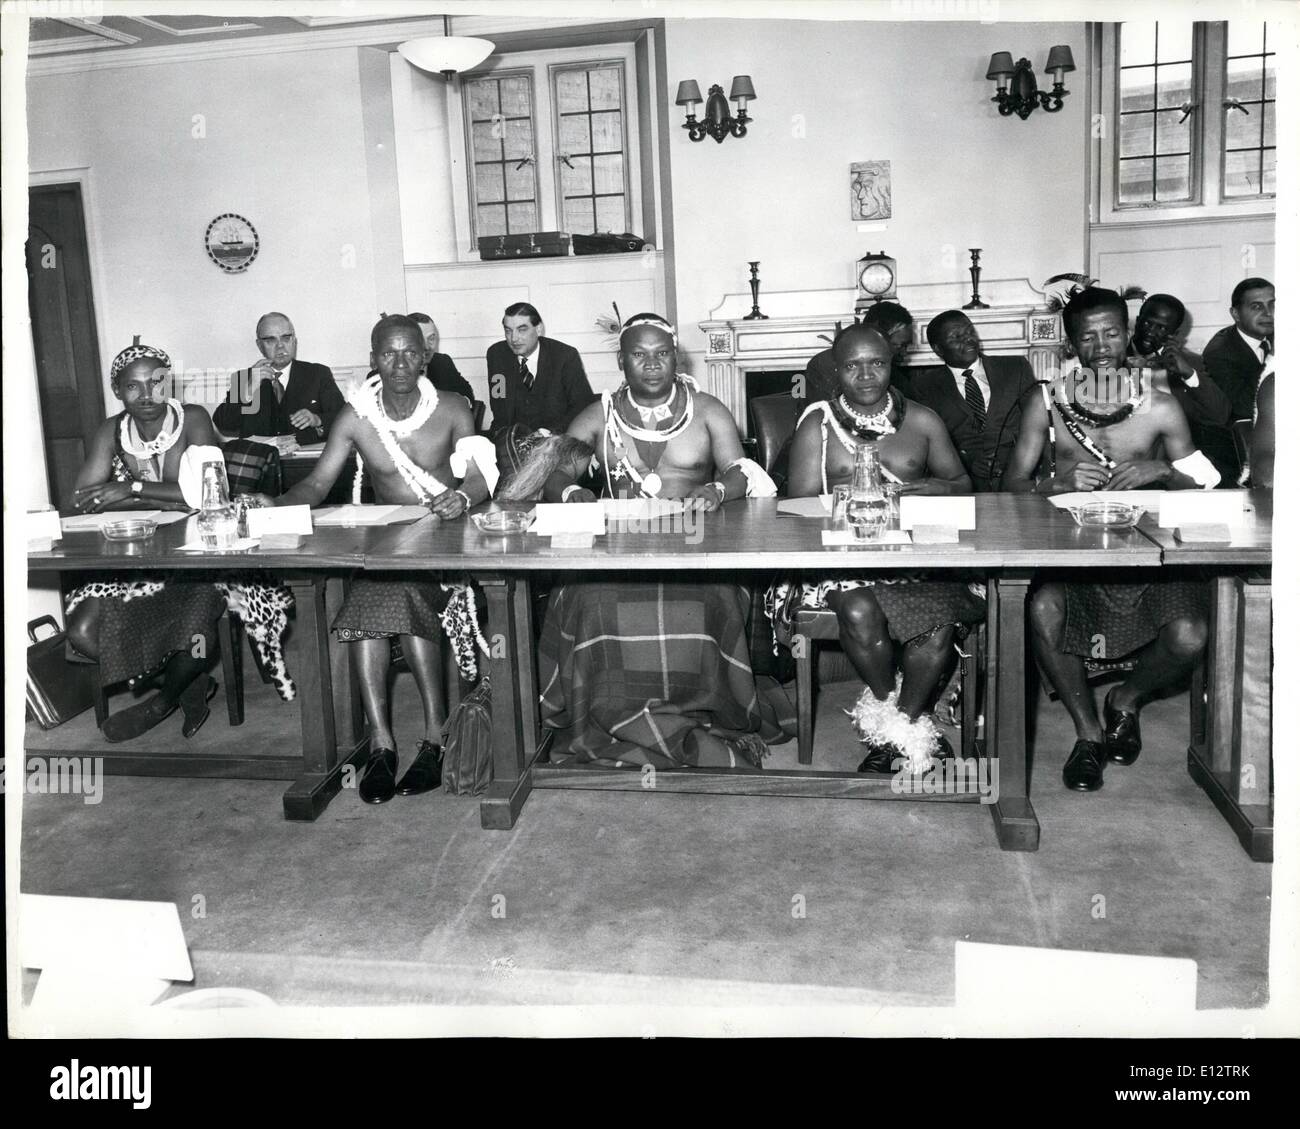 25 février 2012 - Swaziland parle Open de Londres : Les discussions ont commencé à la Colonial Bureau ce matin entre les représentants de la territoire britannique du Swaziland et les fonctionnaires de l'Office des colonies dirigées par M. Duncan Sandys. Le Swaziland se trouve dans la République d'Afrique du Sud et les entretiens se décider à partir de quel niveau de la réforme constitutionnelle est possible à ce stade. La photo montre les membres de la délégation aux pourparlers. De gauche à droite ils sont : - M. J.MO. Sukati, M. P. I. Dlamini et M. A.K. Hiofe. Banque D'Images